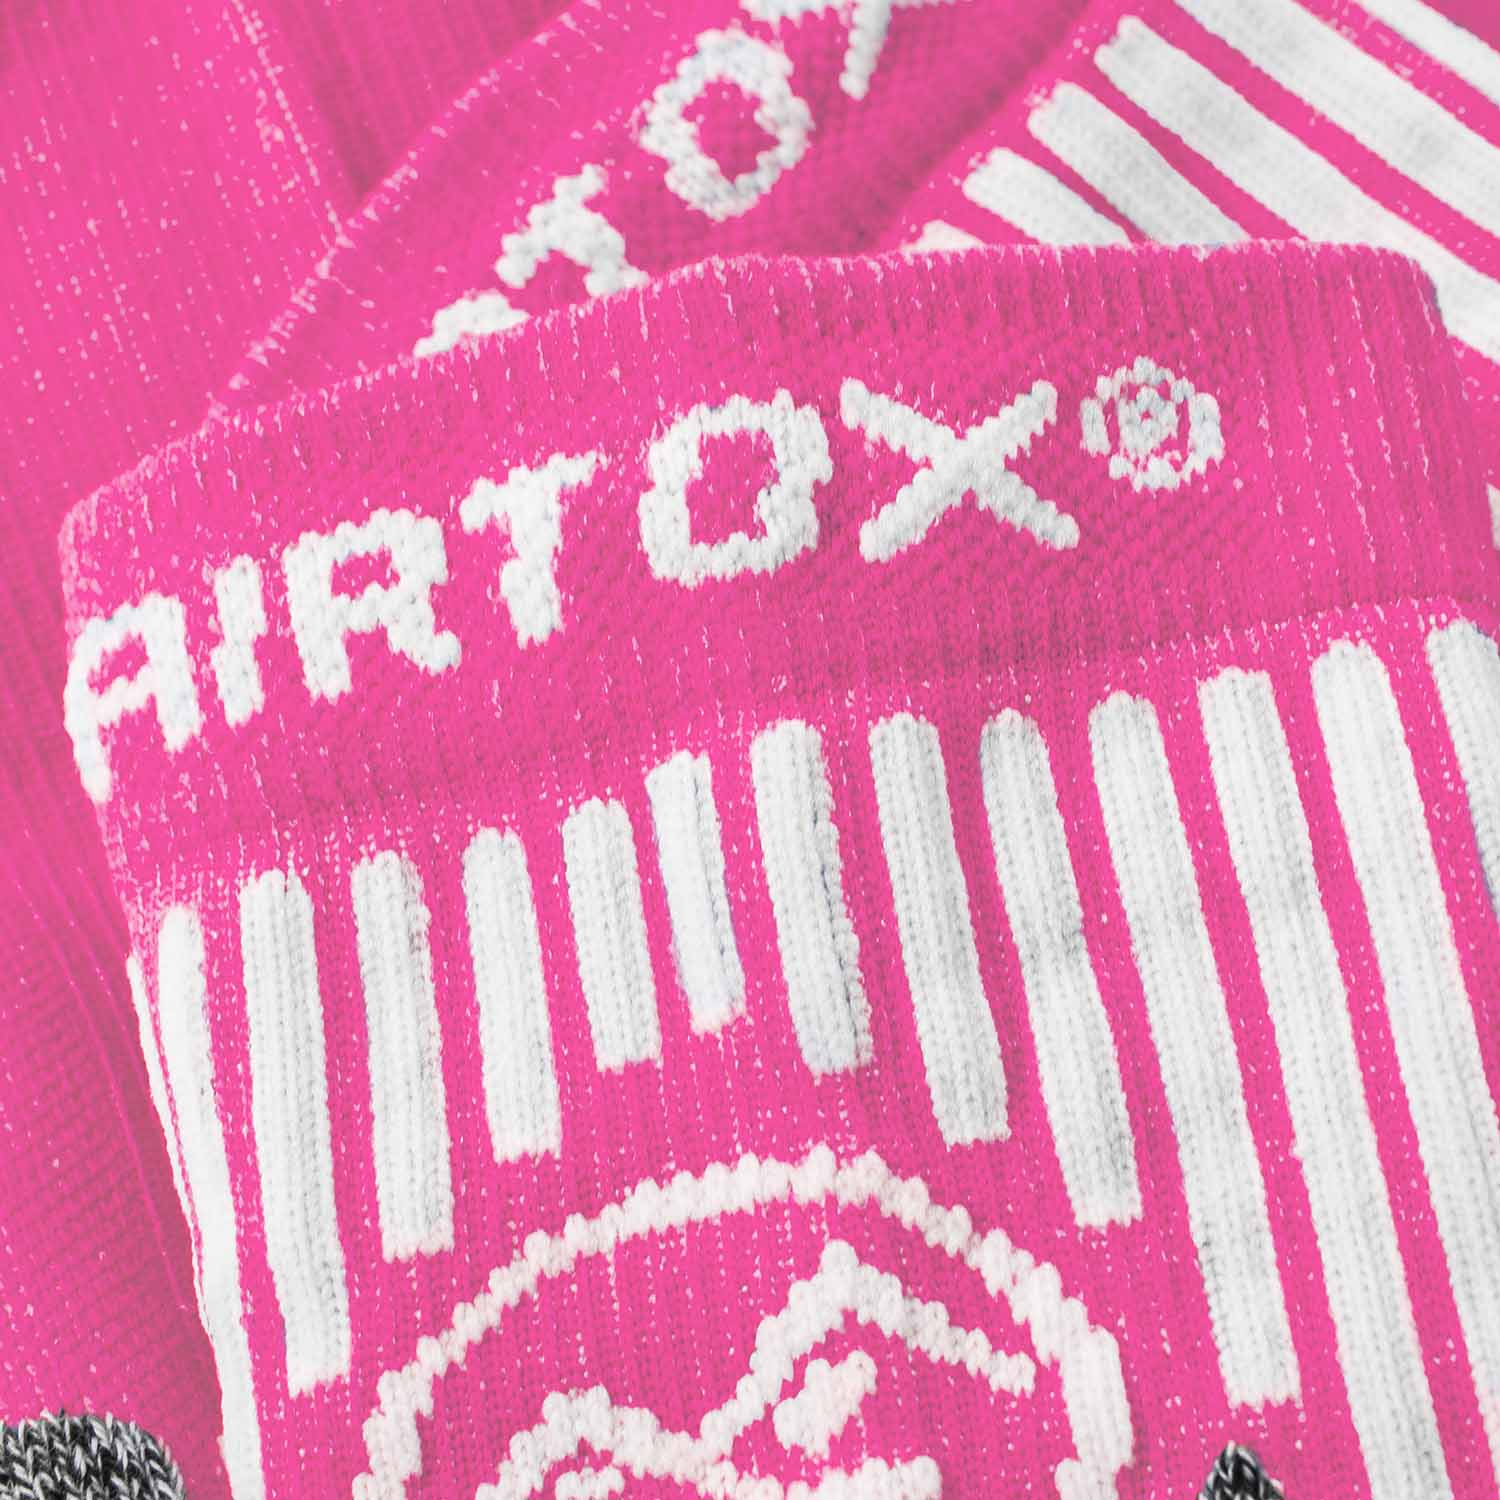 AIRTOX Absolute 4 til | AIRTOX